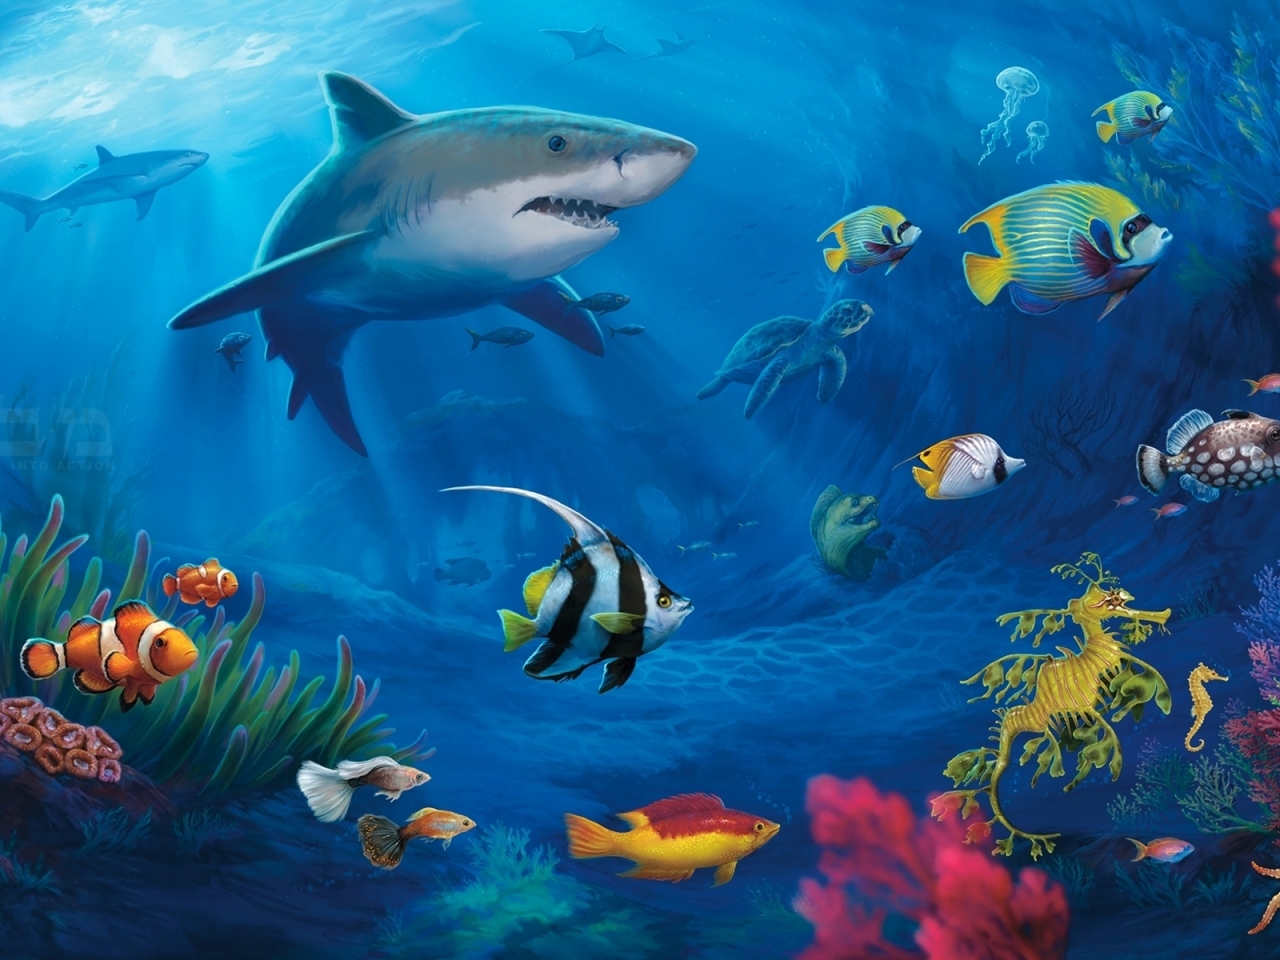 Underwater World Live for 1280 x 960 resolution